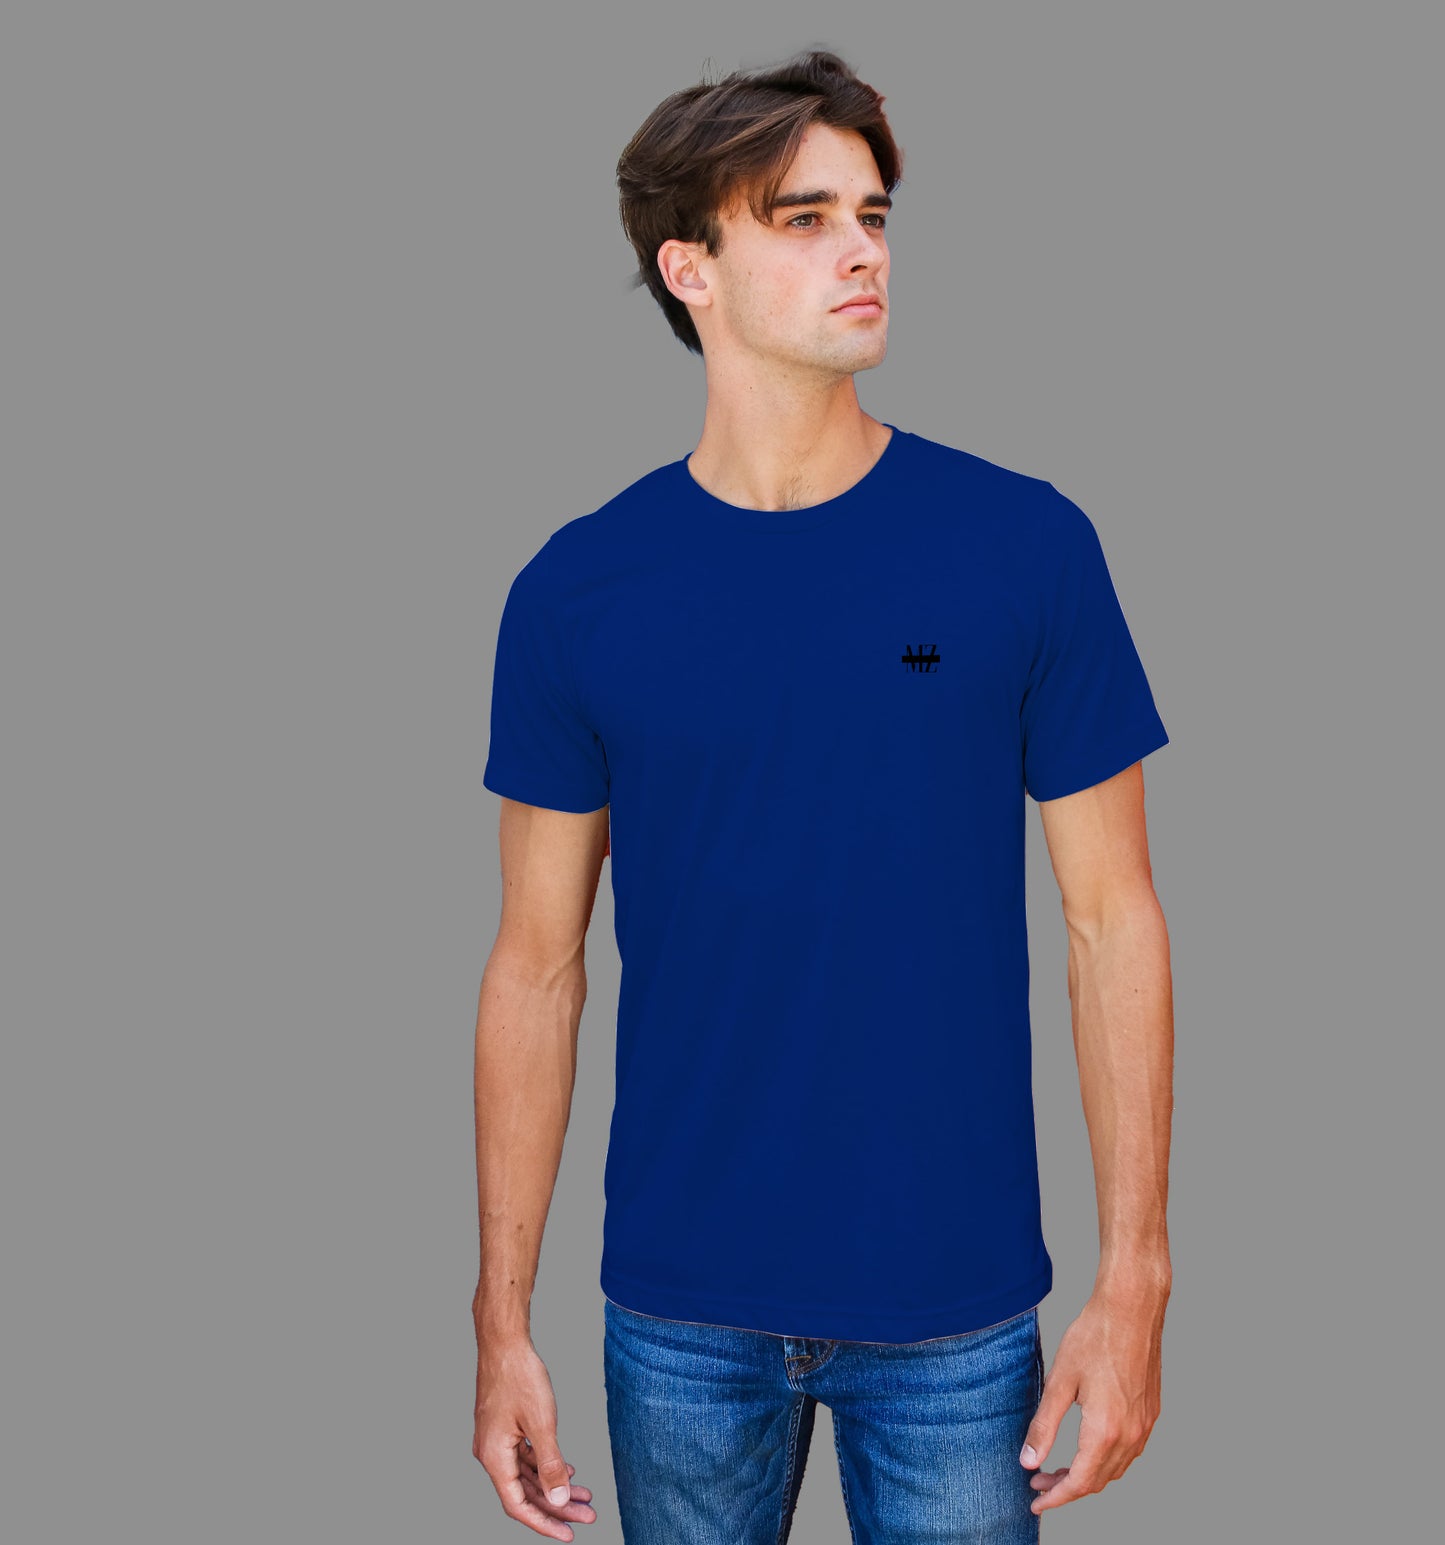 Navy Blue T-Shirt In Plain - Mon Zurich Originals